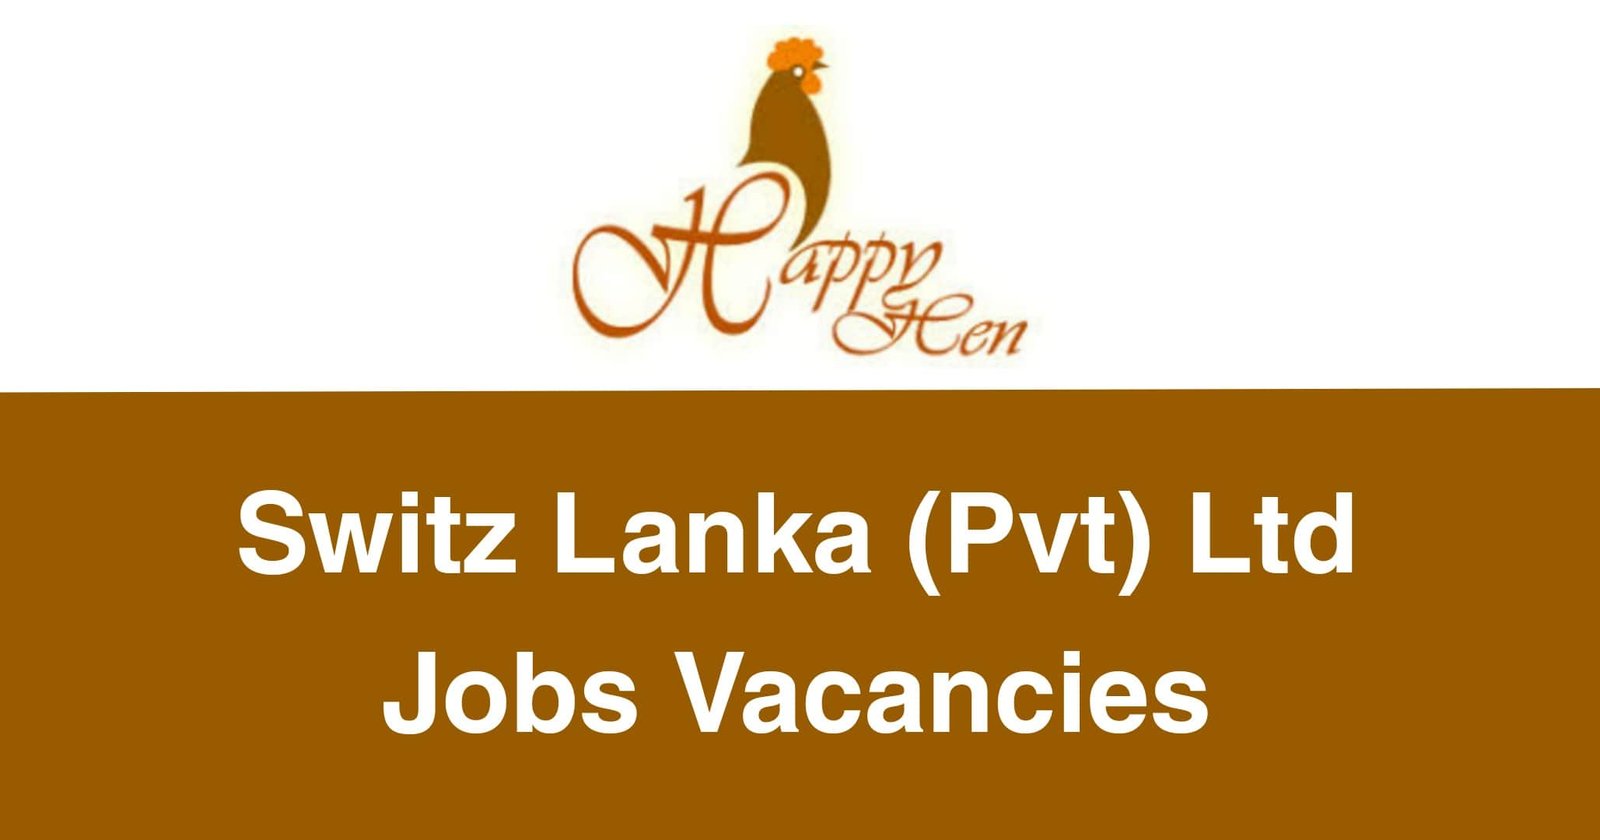 Switz Lanka (Pvt) Ltd Jobs Vacancies